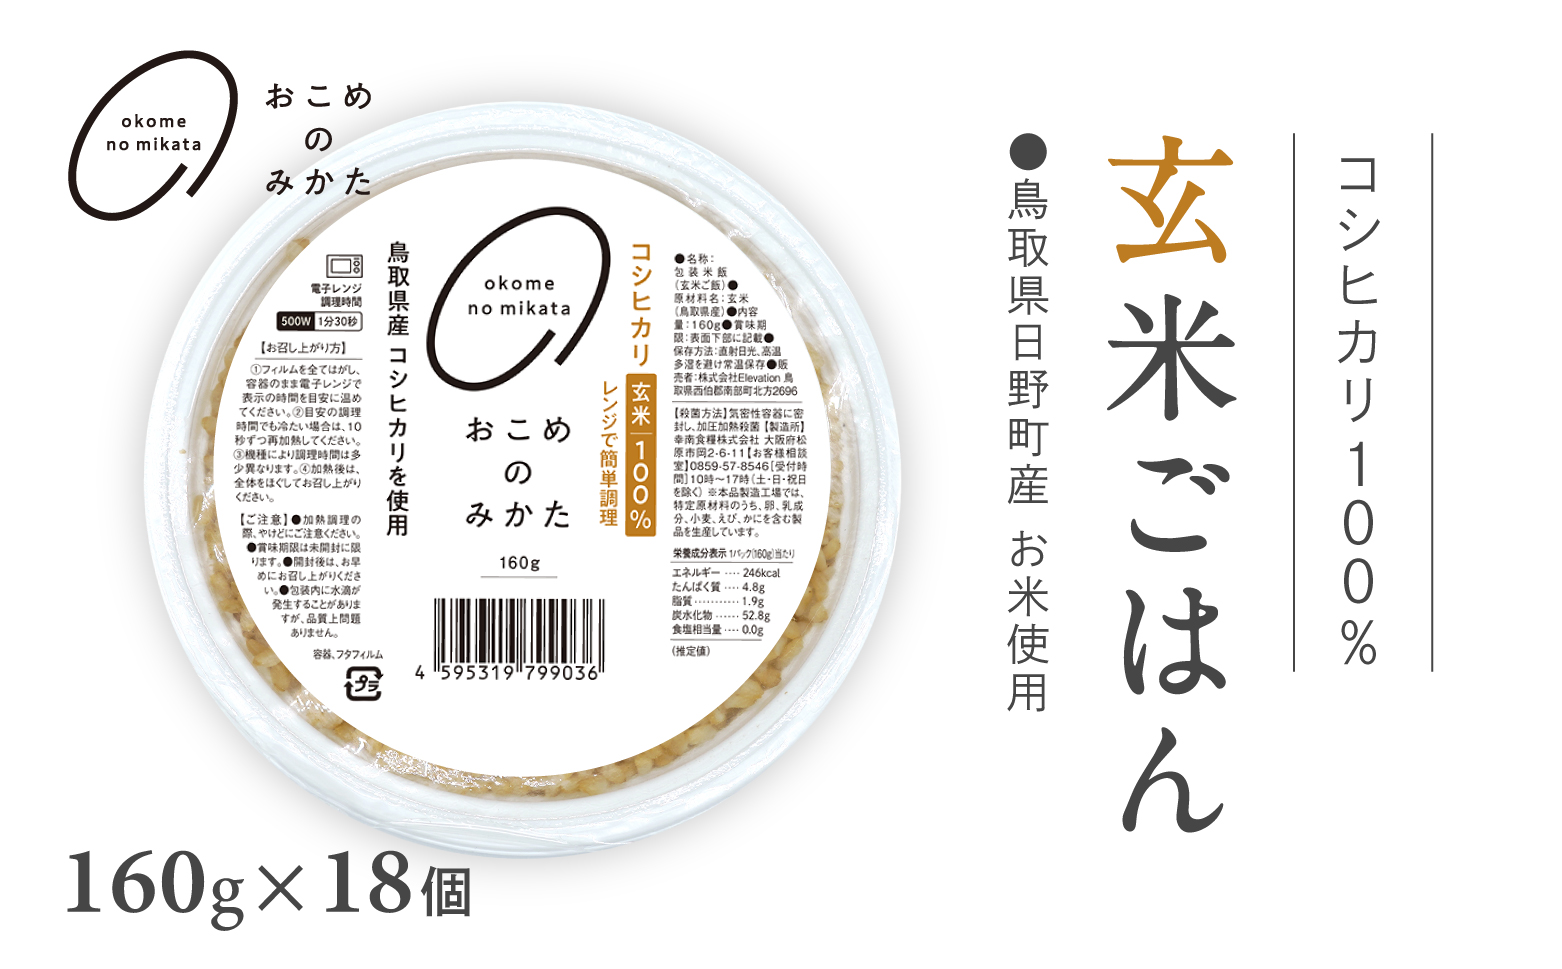 鳥取県日野町産コシヒカリ 玄米ごはん 玄米パック 160g×18個入り おこめのみかた パックごはん パックご飯